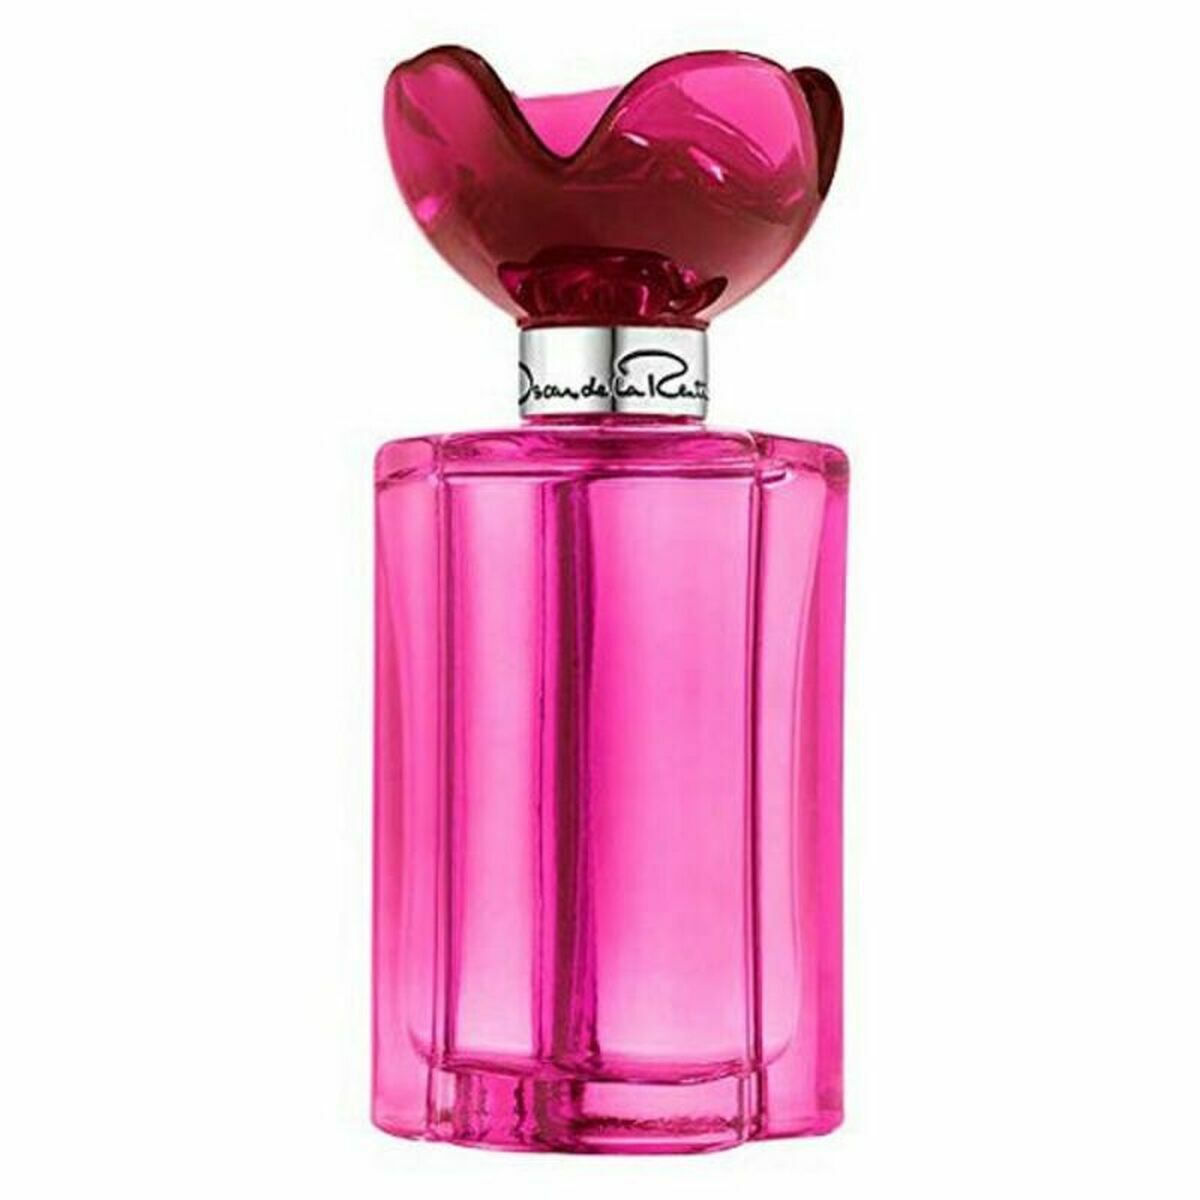 Perfume kobiet Oscar de la Renta Edt Rose 100 ml